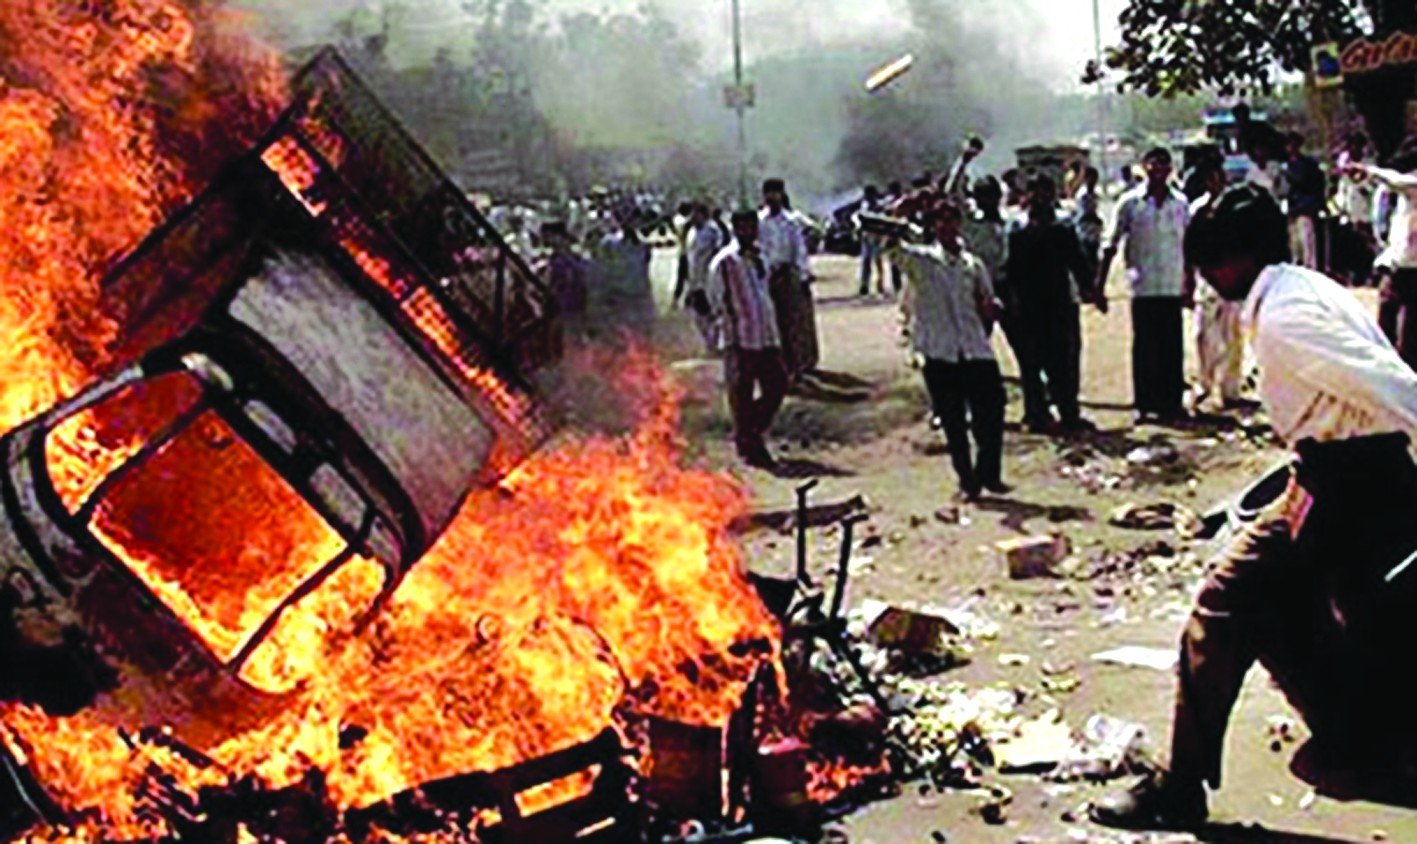 બિલ્કિસબાનુ ચુકાદો ૨૦૦૨ની ગુજરાત હિંસામાં સરકારની સહઅપરાધિતા સ્પષ્ટપણે દર્શાવે છે